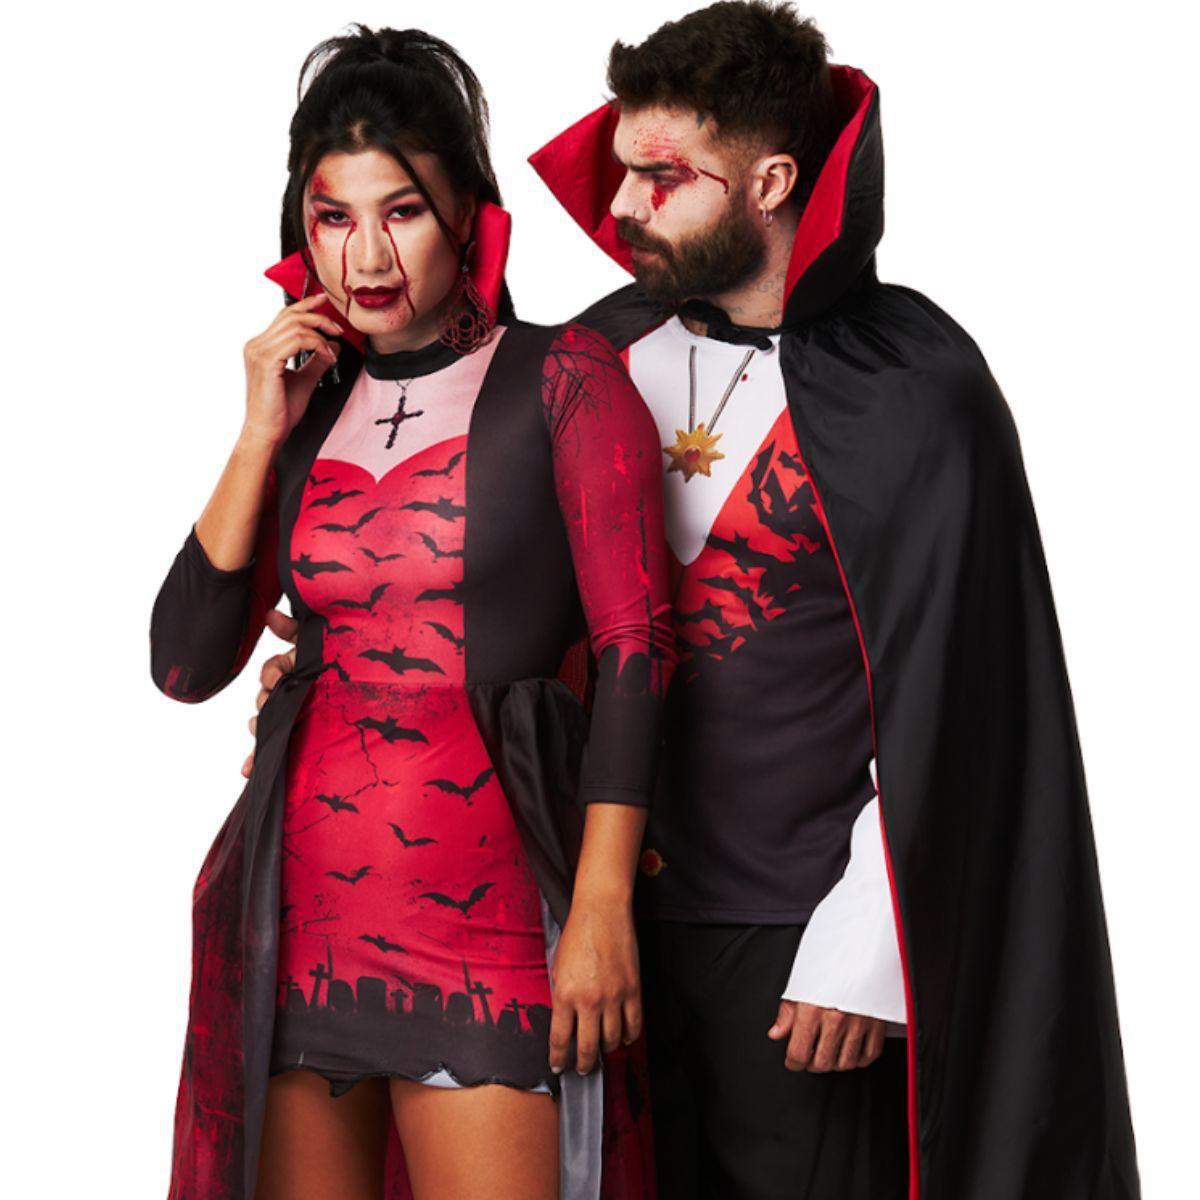 Vampira Adulta Luxo com Capa de Halloween